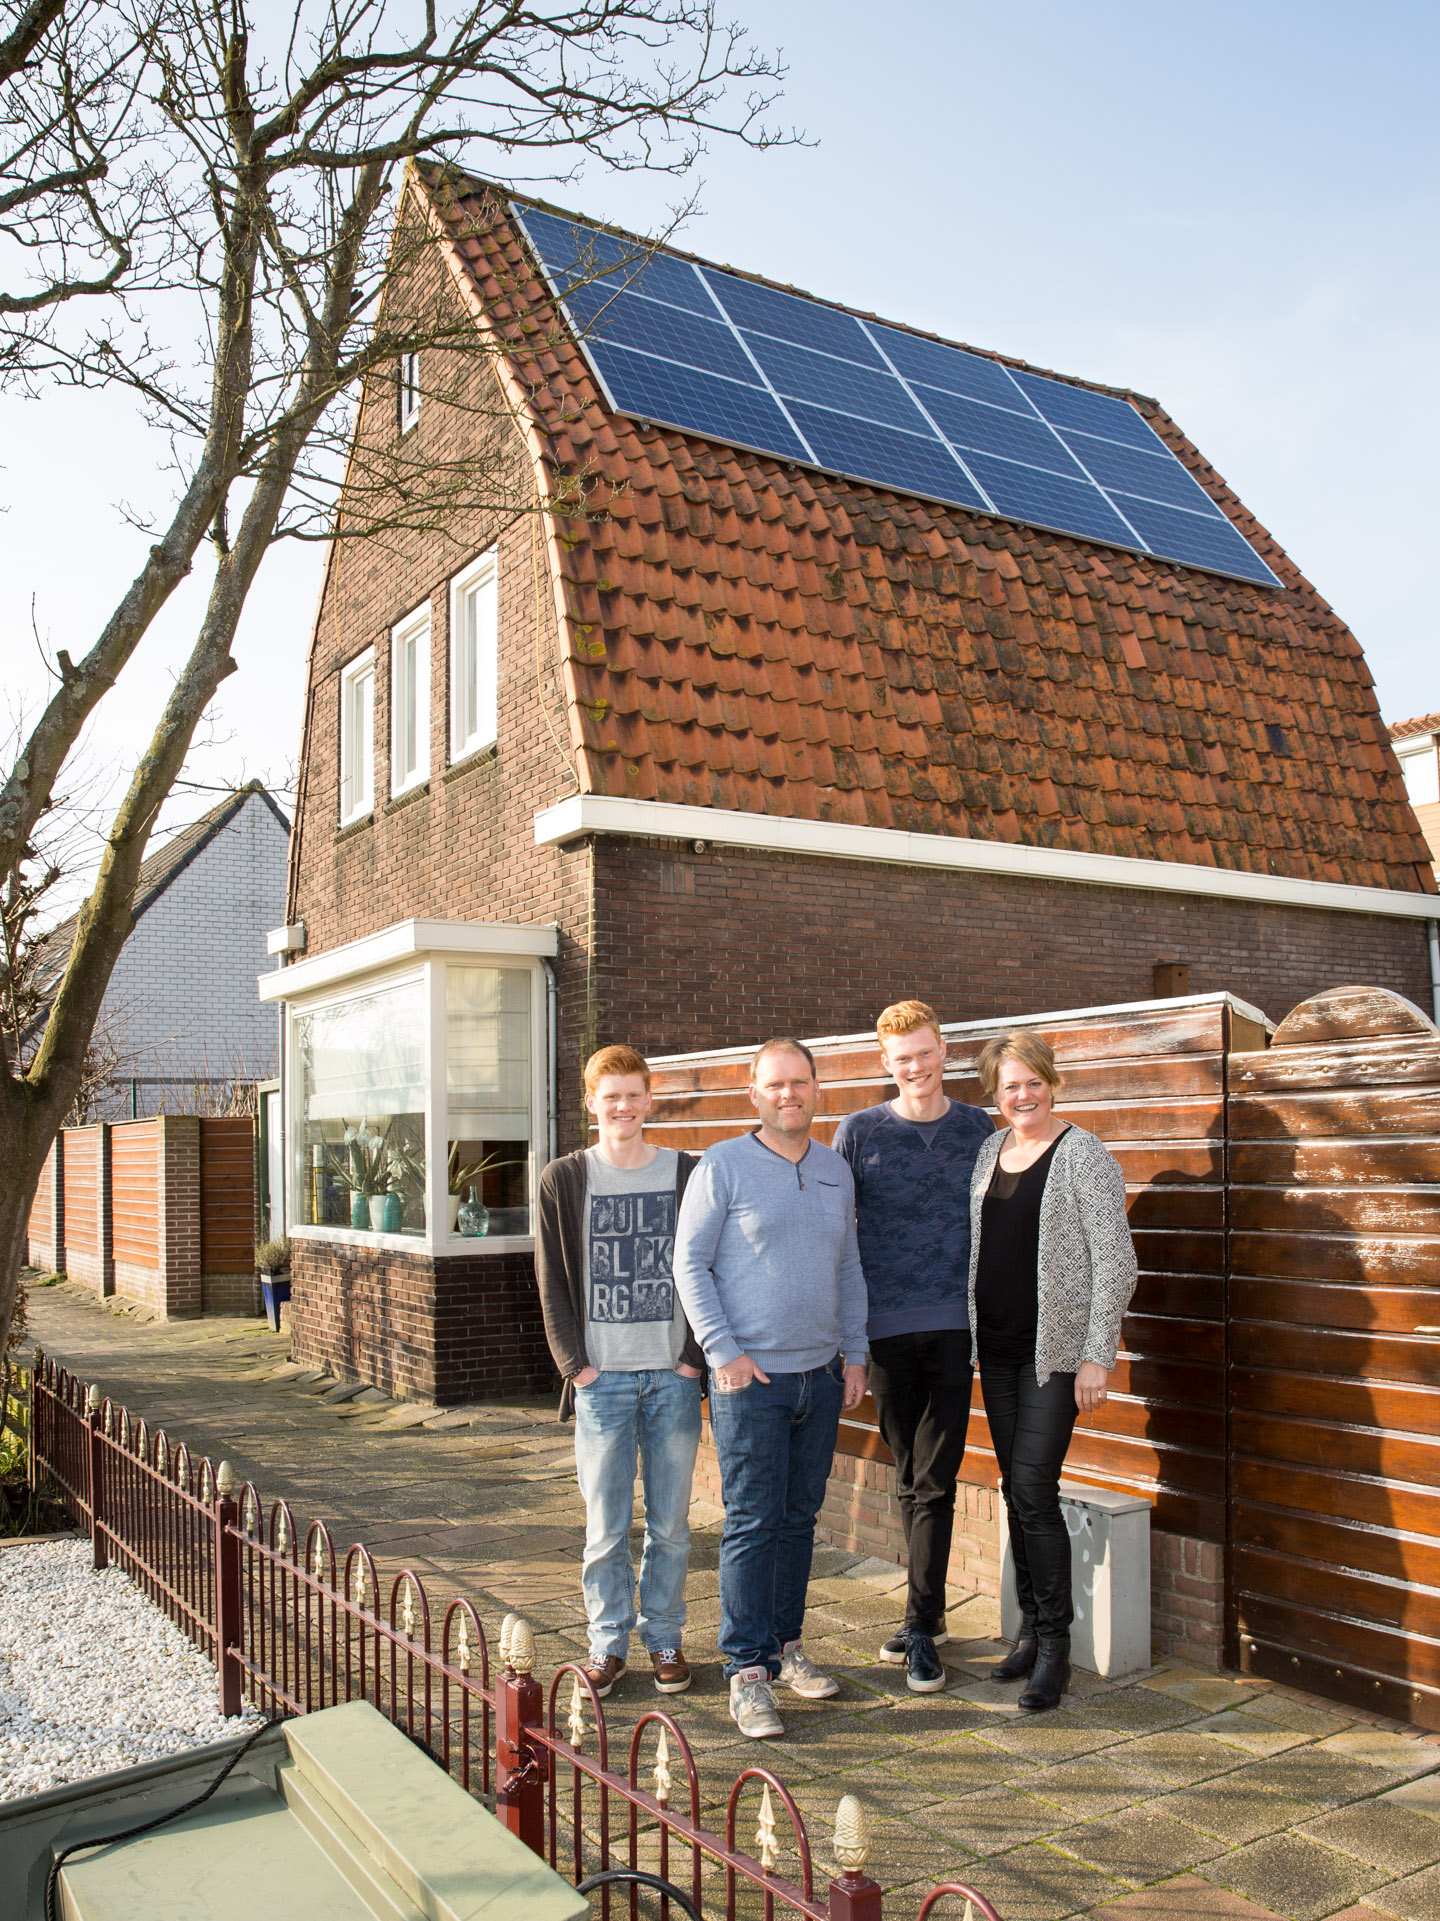 Energieneutraal-huis-woonwijk-wonen-thuisbaas-credit-Chantal-Bekker-GraphicAlert-01-zonnepanelen-dak1